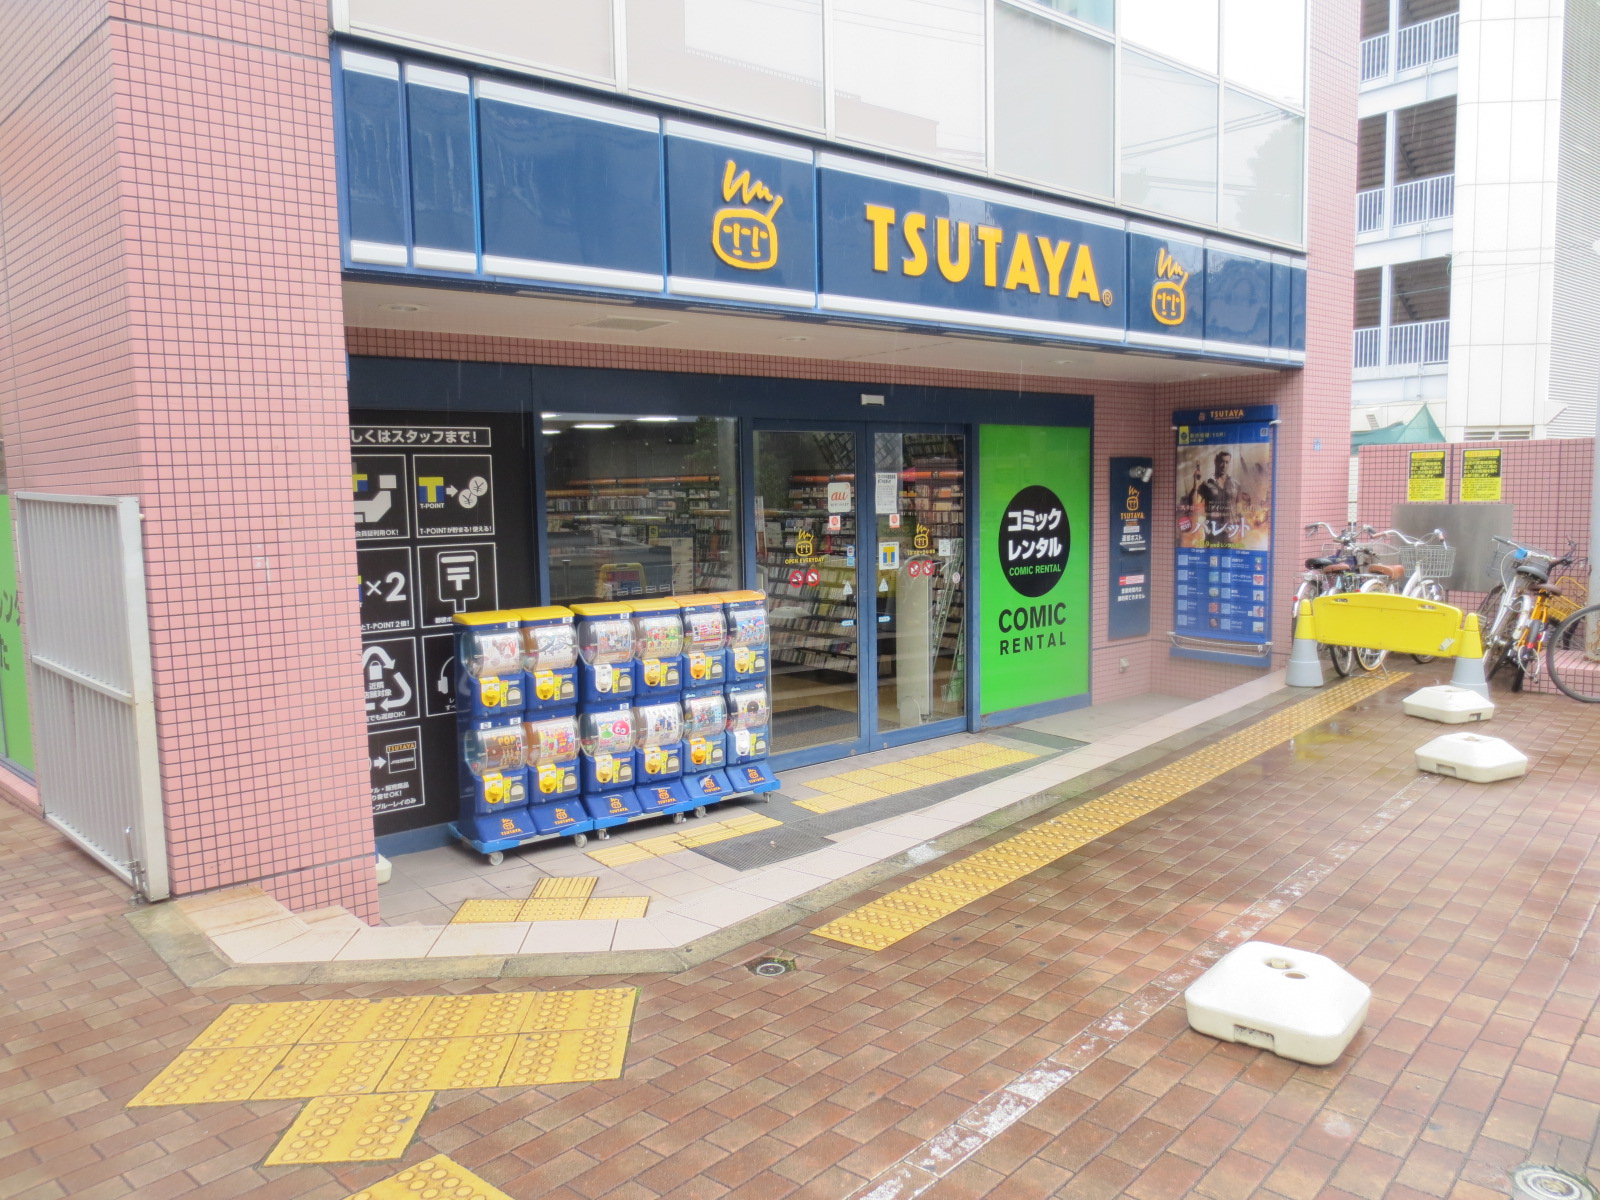 Rental video. TSUTAYA JR Sumiyoshi Station store up to (video rental) 1334m